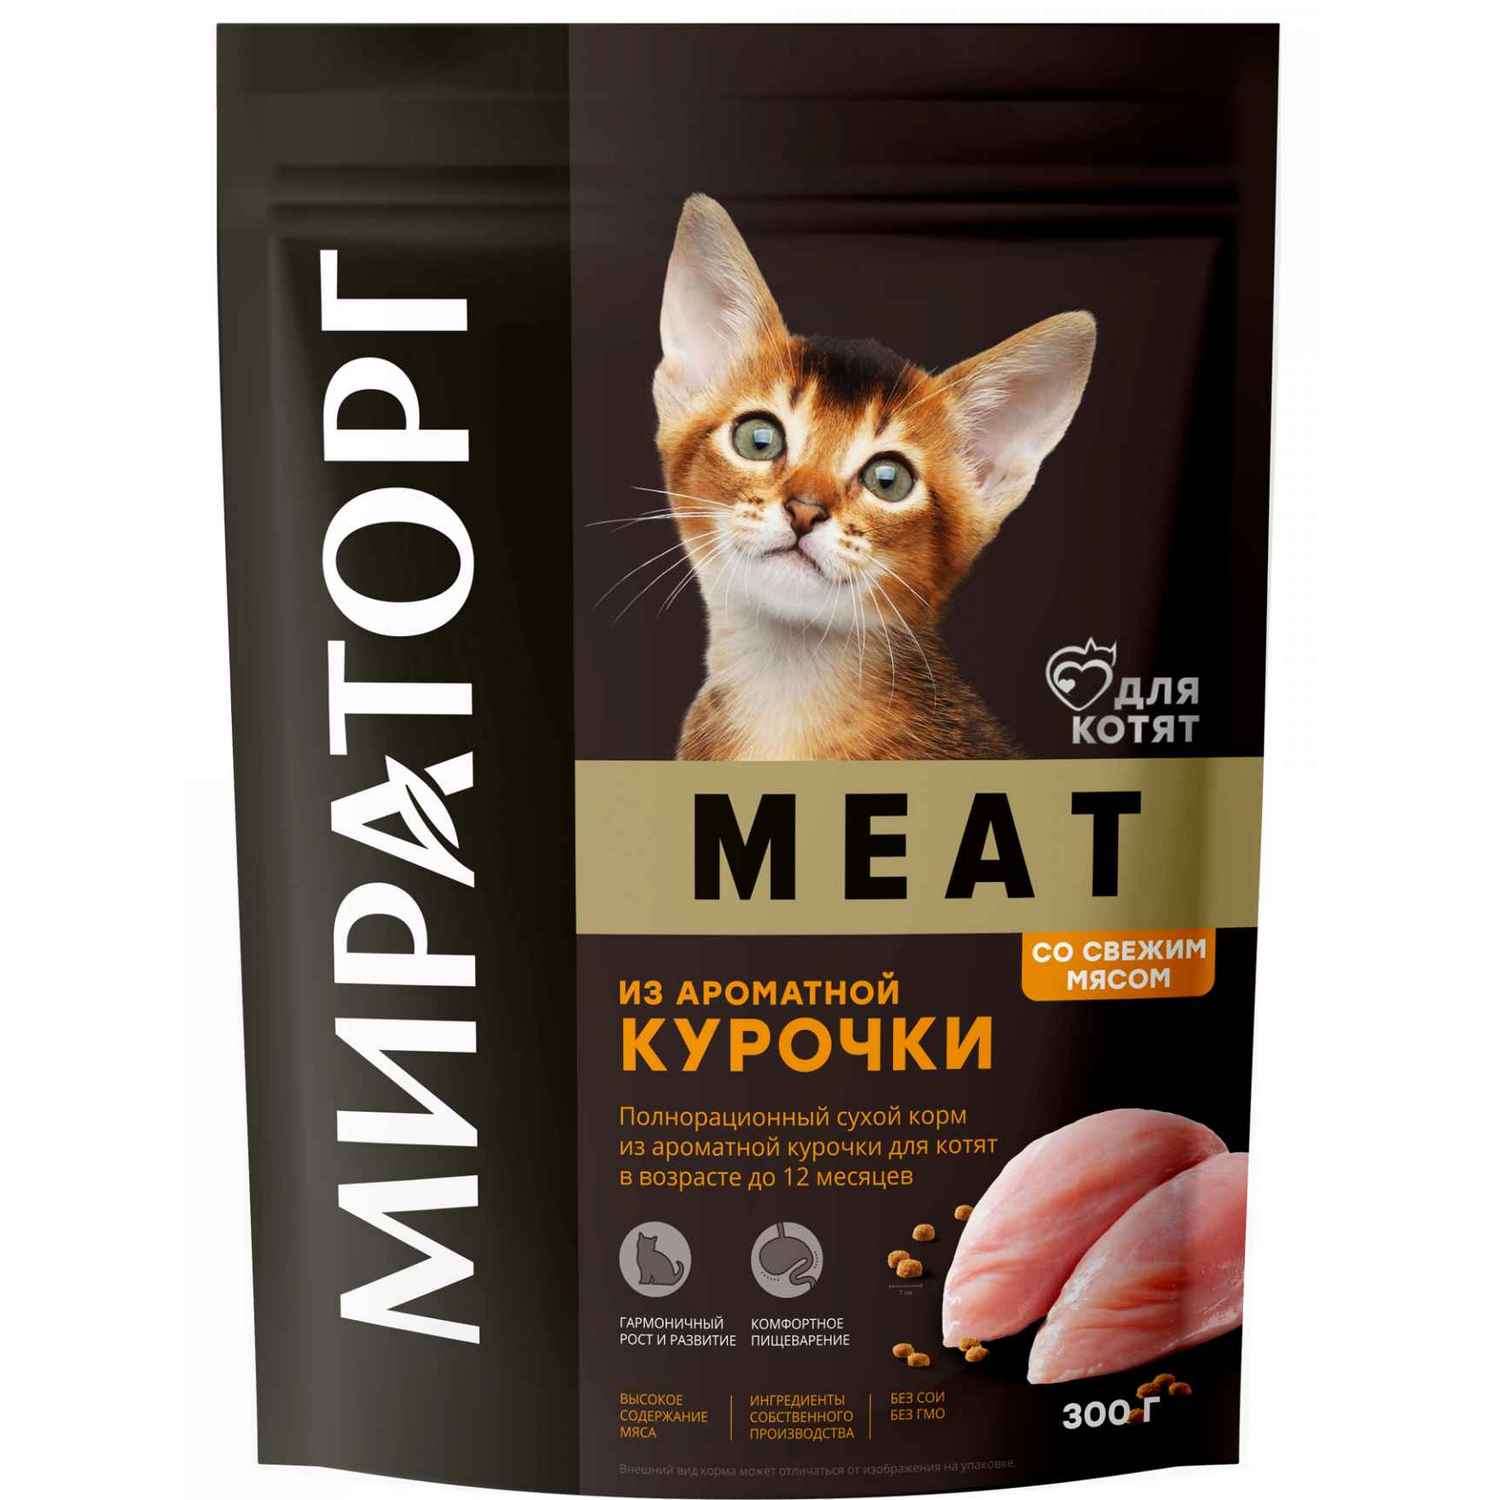 Полнорационный сухой корм WINNER Meat из ароматной курочки для котят в возрасте до 12 месяцев 0.3 кг - фото 1